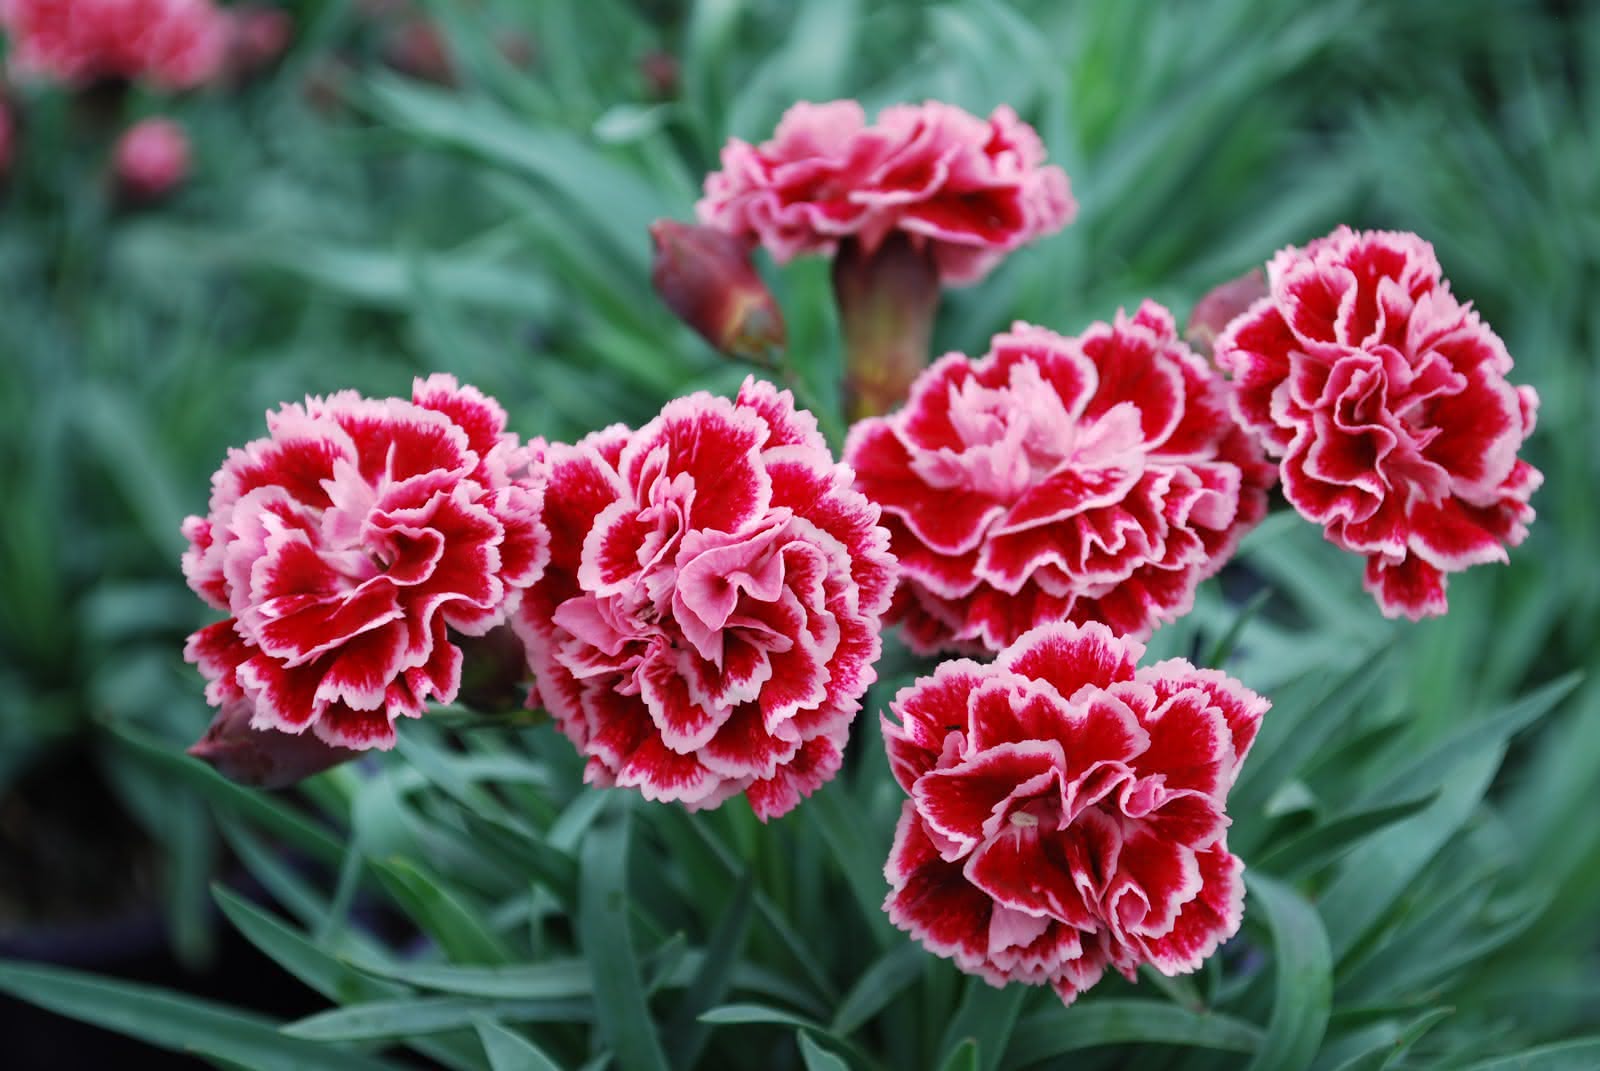 Hoa cẩm chướng tháng 10 nở rộ với hương thơm quyến rủ